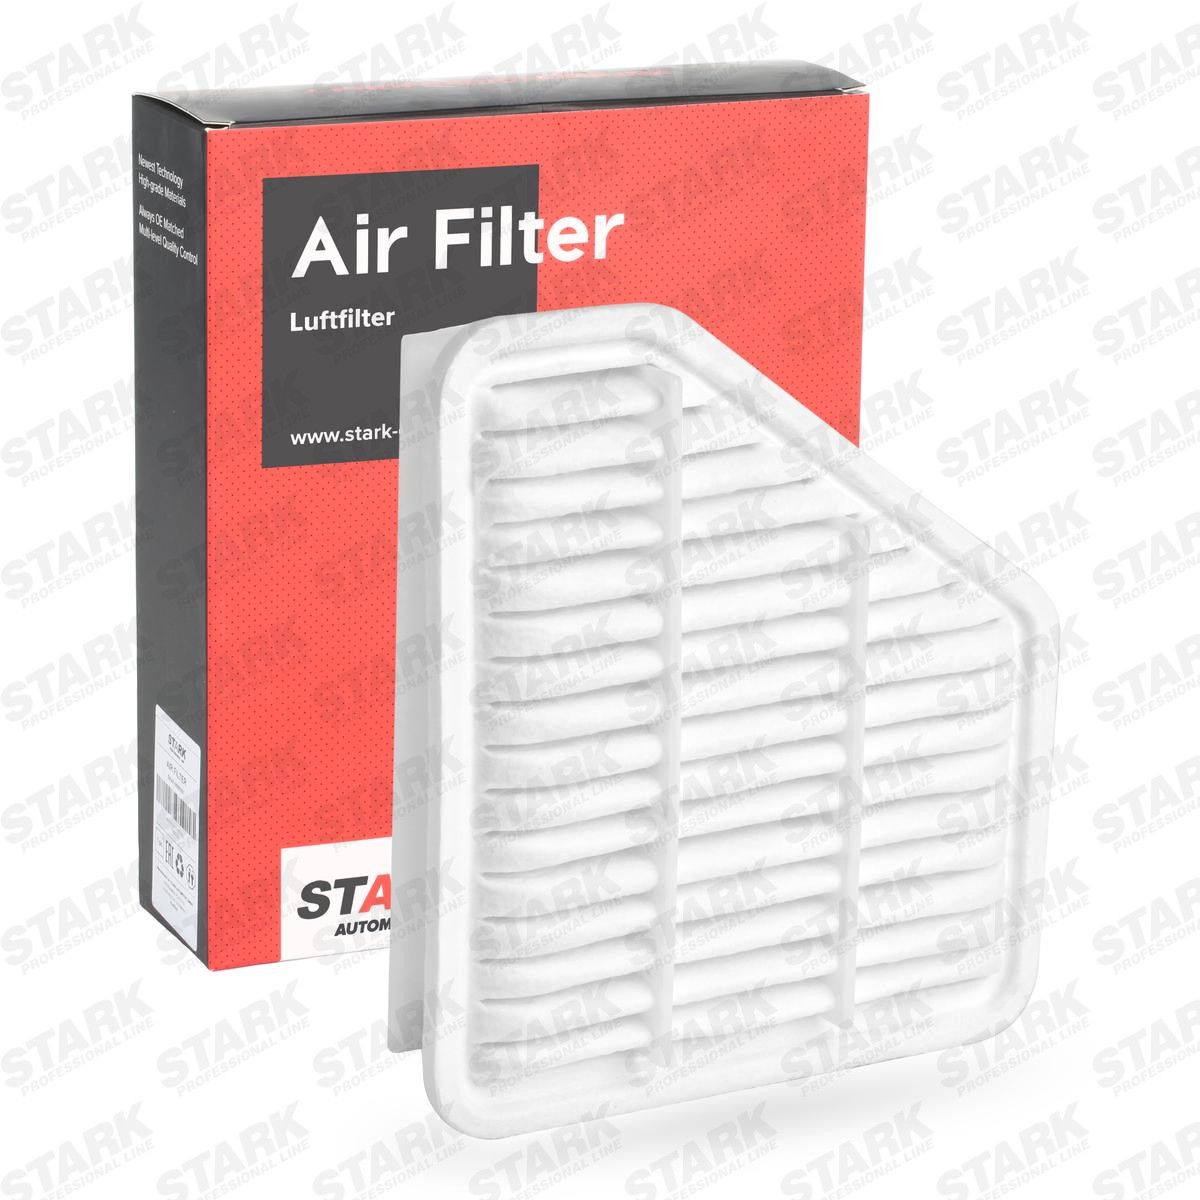 STARK SKAF-0060261 Air filter 86mm, 234mm, 268mm, Filter Insert, Air Recirculation Filter, with pre-filter